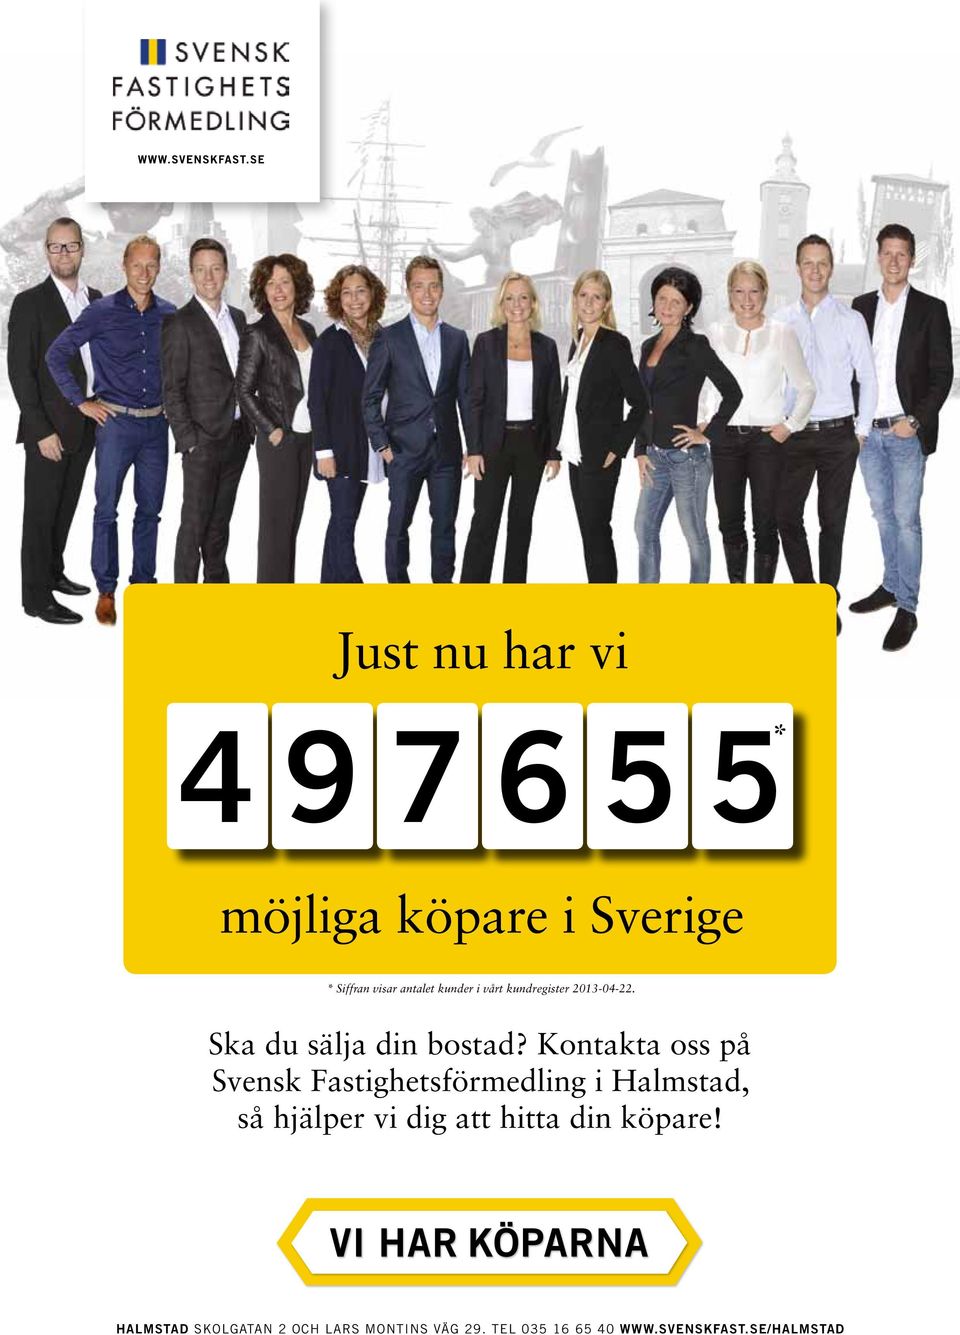 Kontakta oss på Svensk Fastighetsförmedling i Halmstad, så hjälper vi dig att